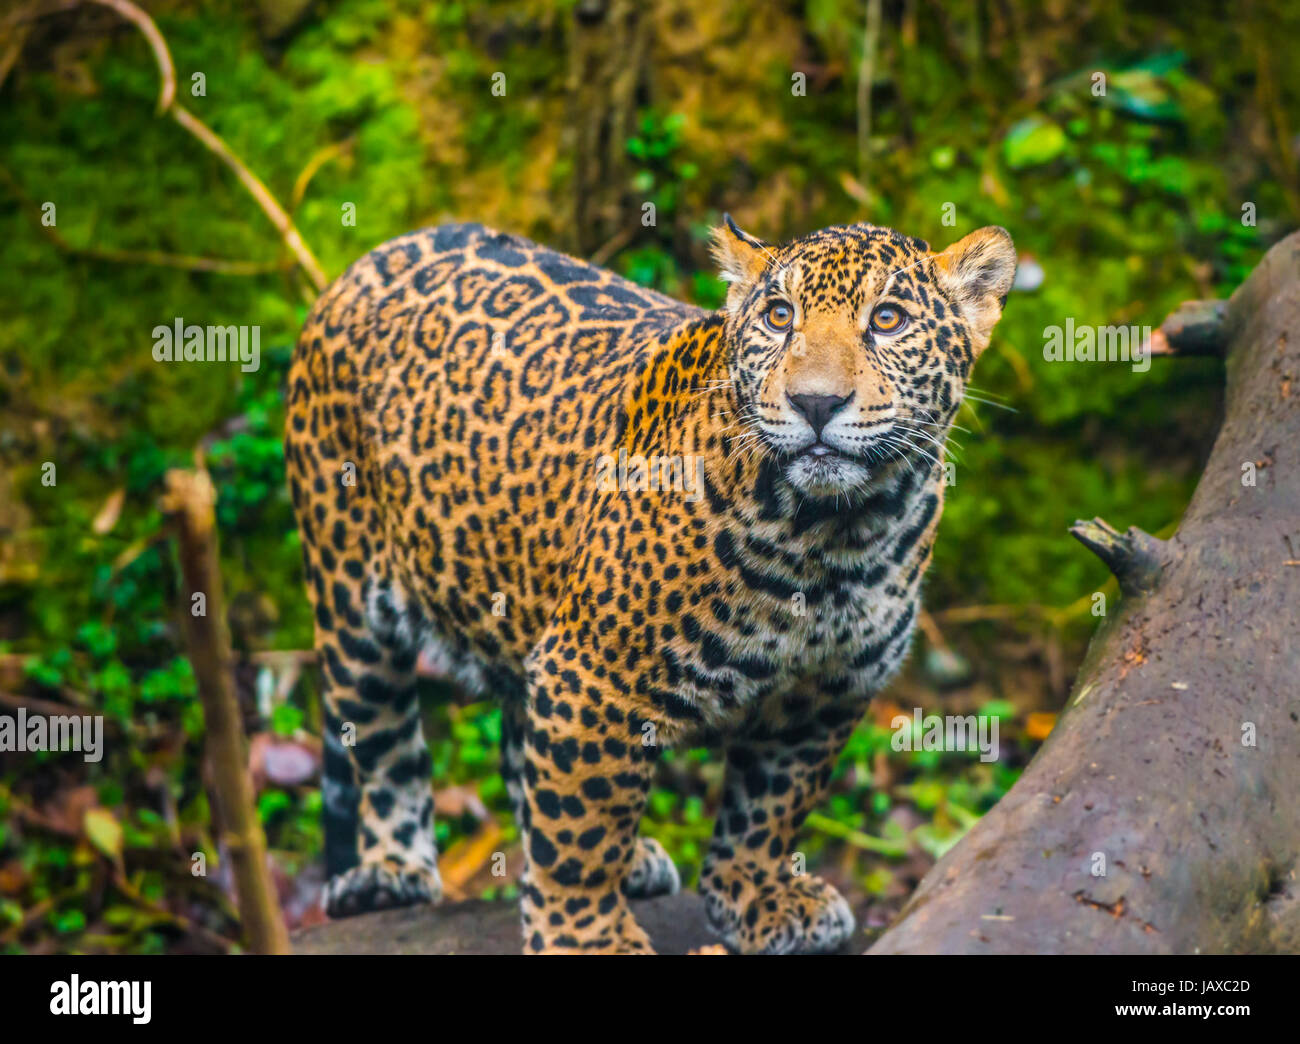 Beautiful Jaguar animal in it's natural habitat Stock Photo - Alamy